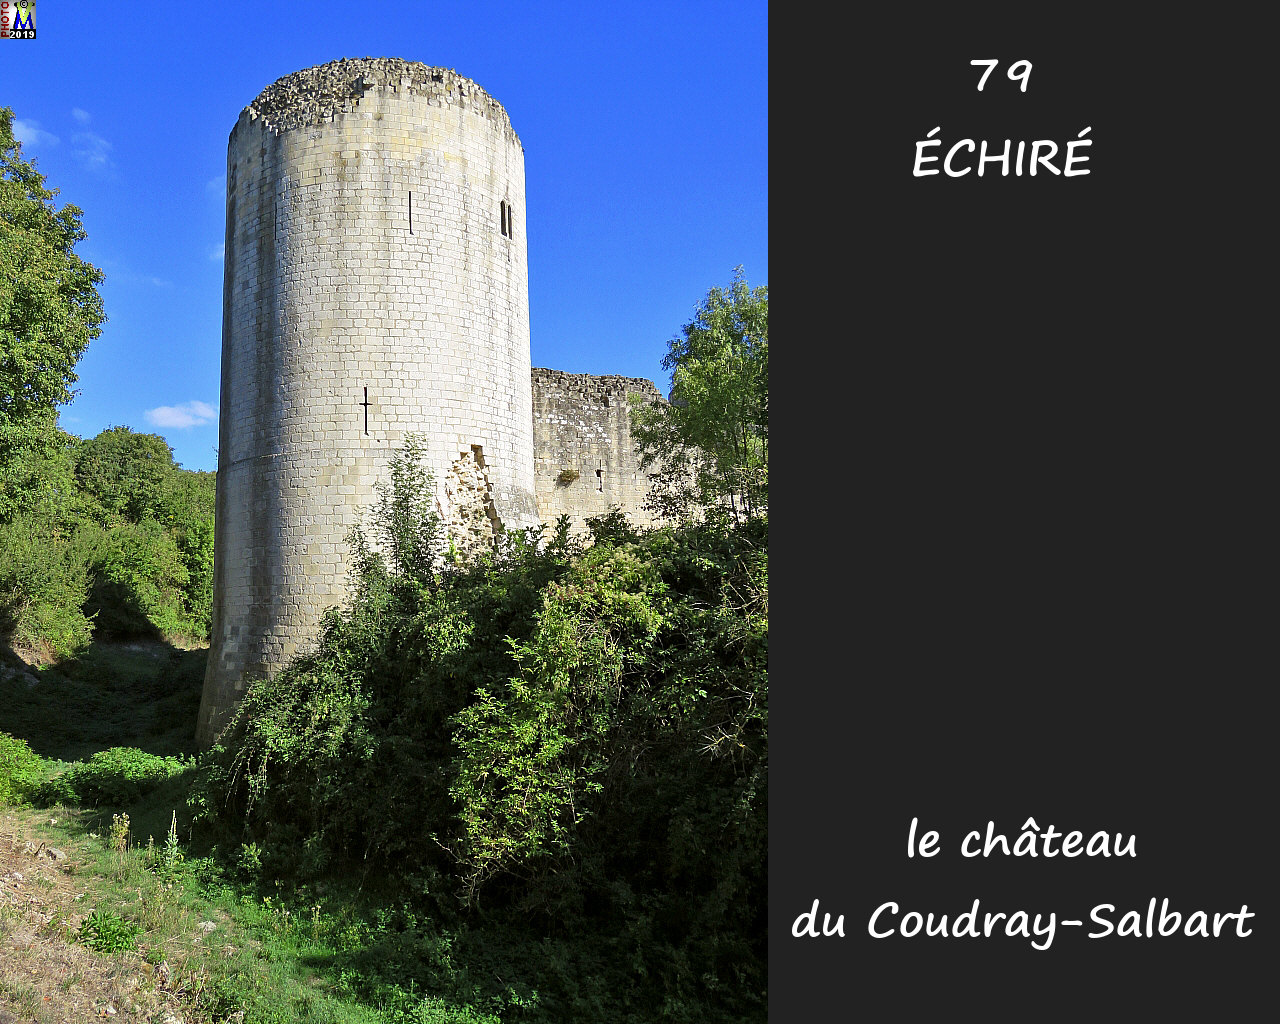 79ECHIRE_chateau_1032.jpg